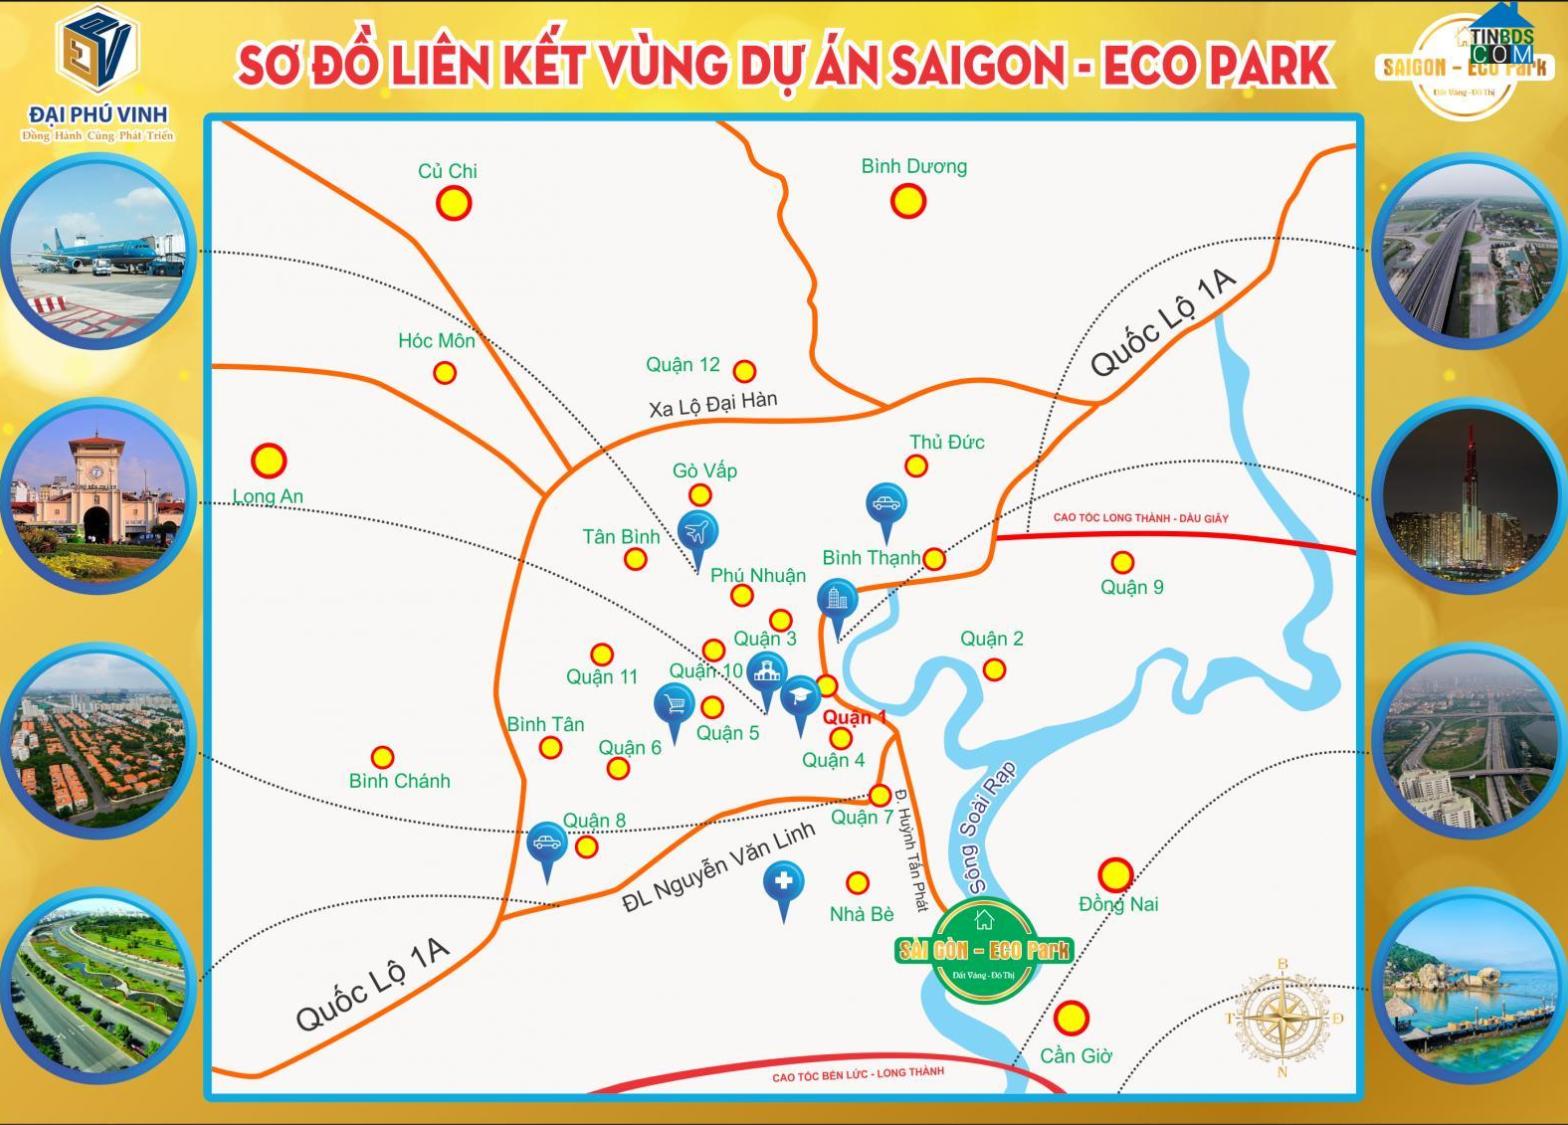 Saigon Eco Park